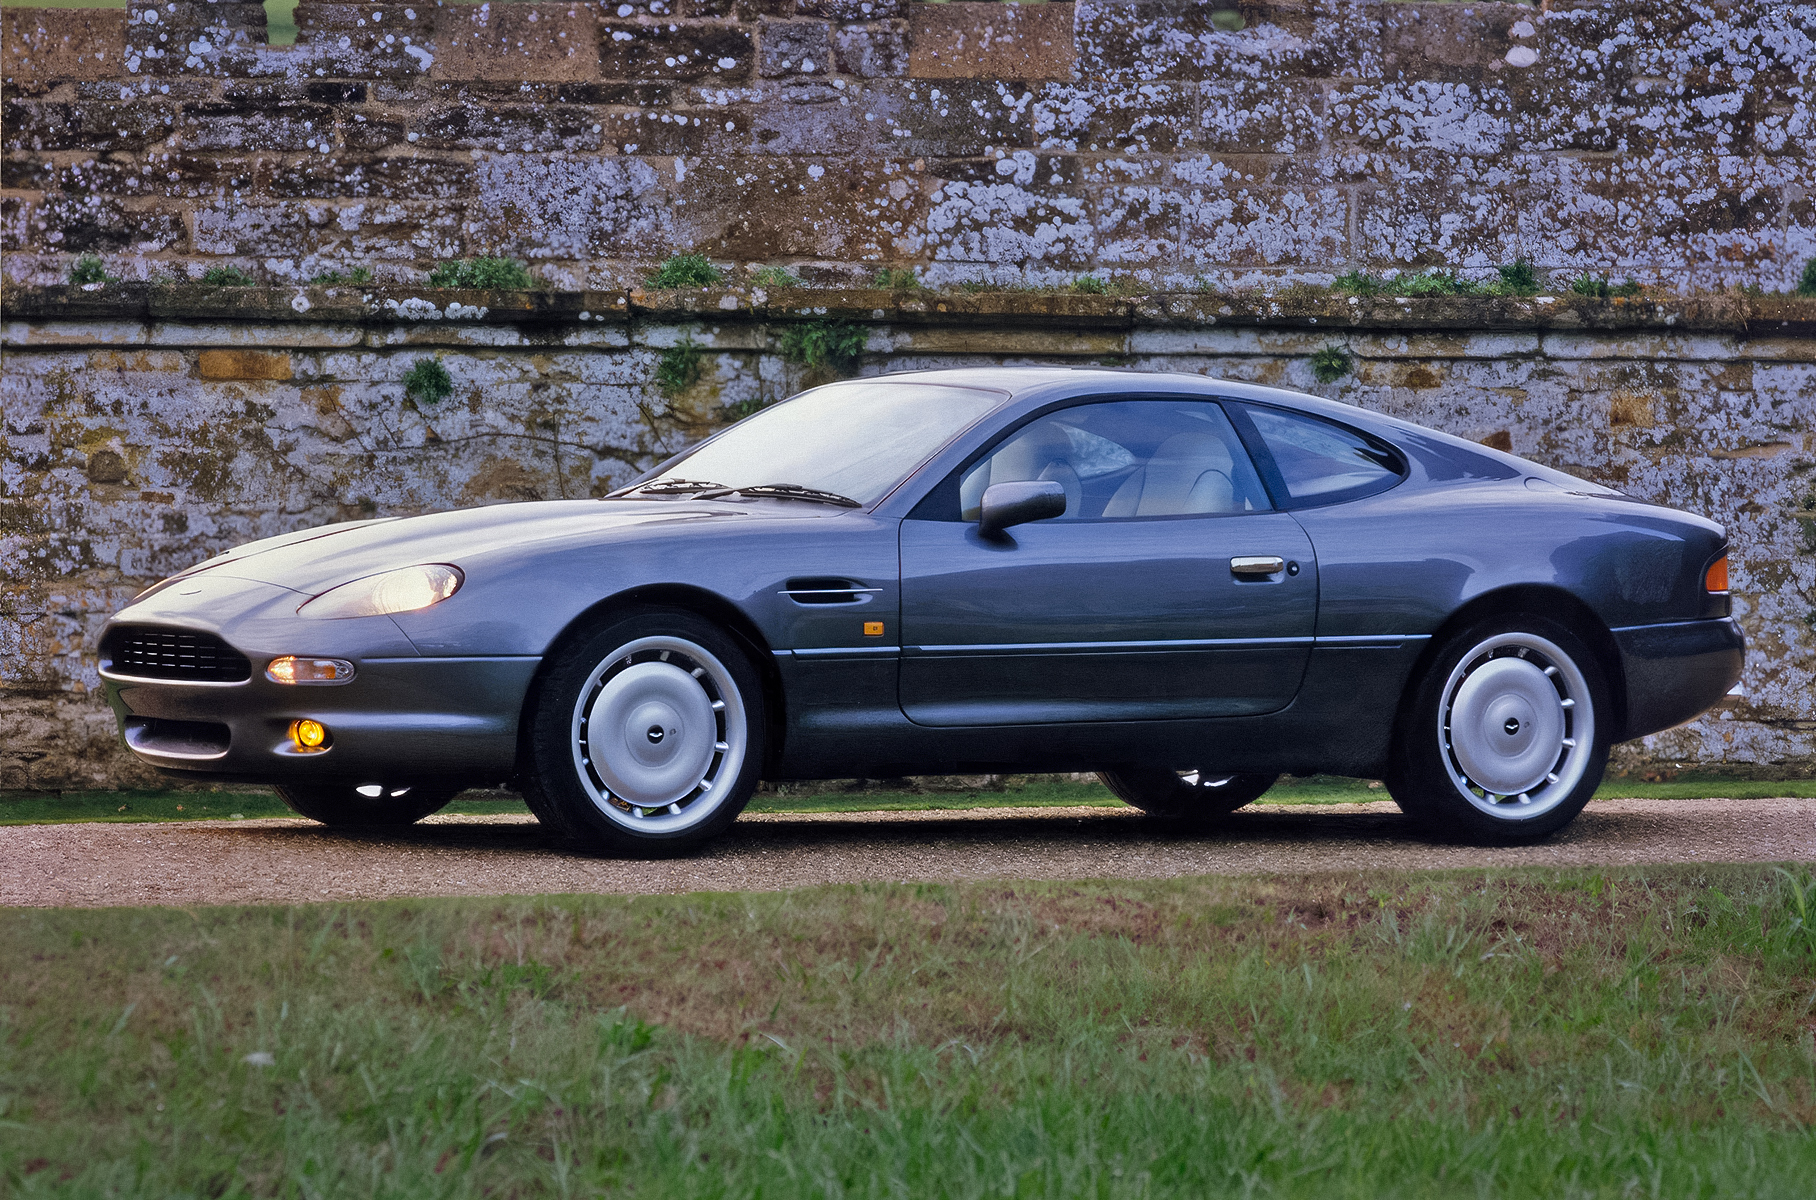 По габаритам Aston Martin DB7 чуть компактнее современной «трешки» BMW. Длина — 4631 мм, ширина — 1820 мм, высота — 1268 мм